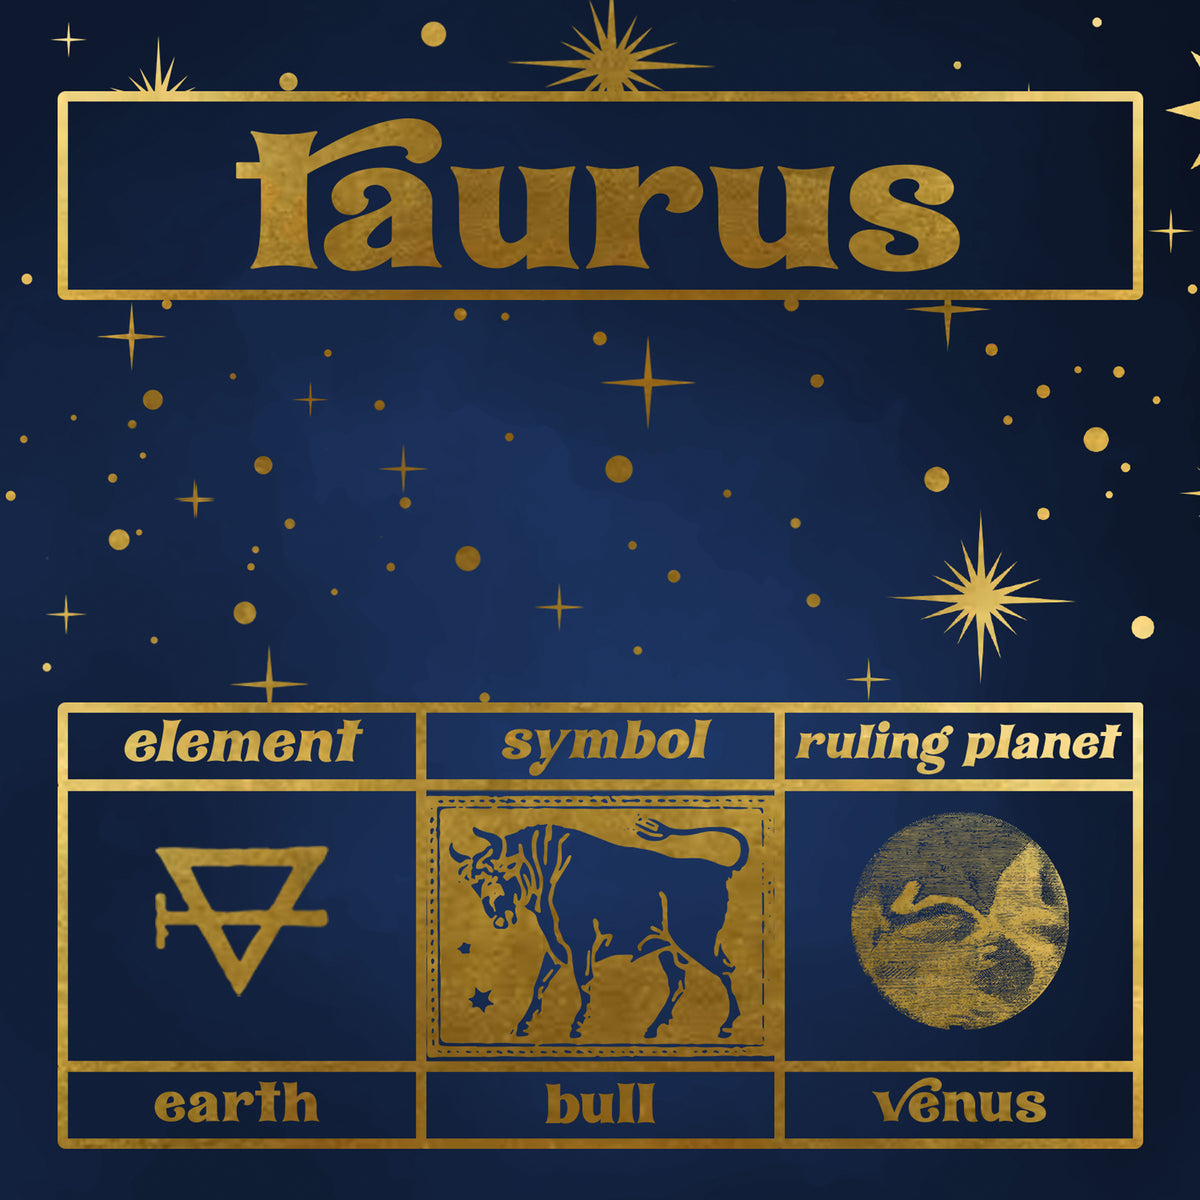 Taurus Zodiac Gift Box Set